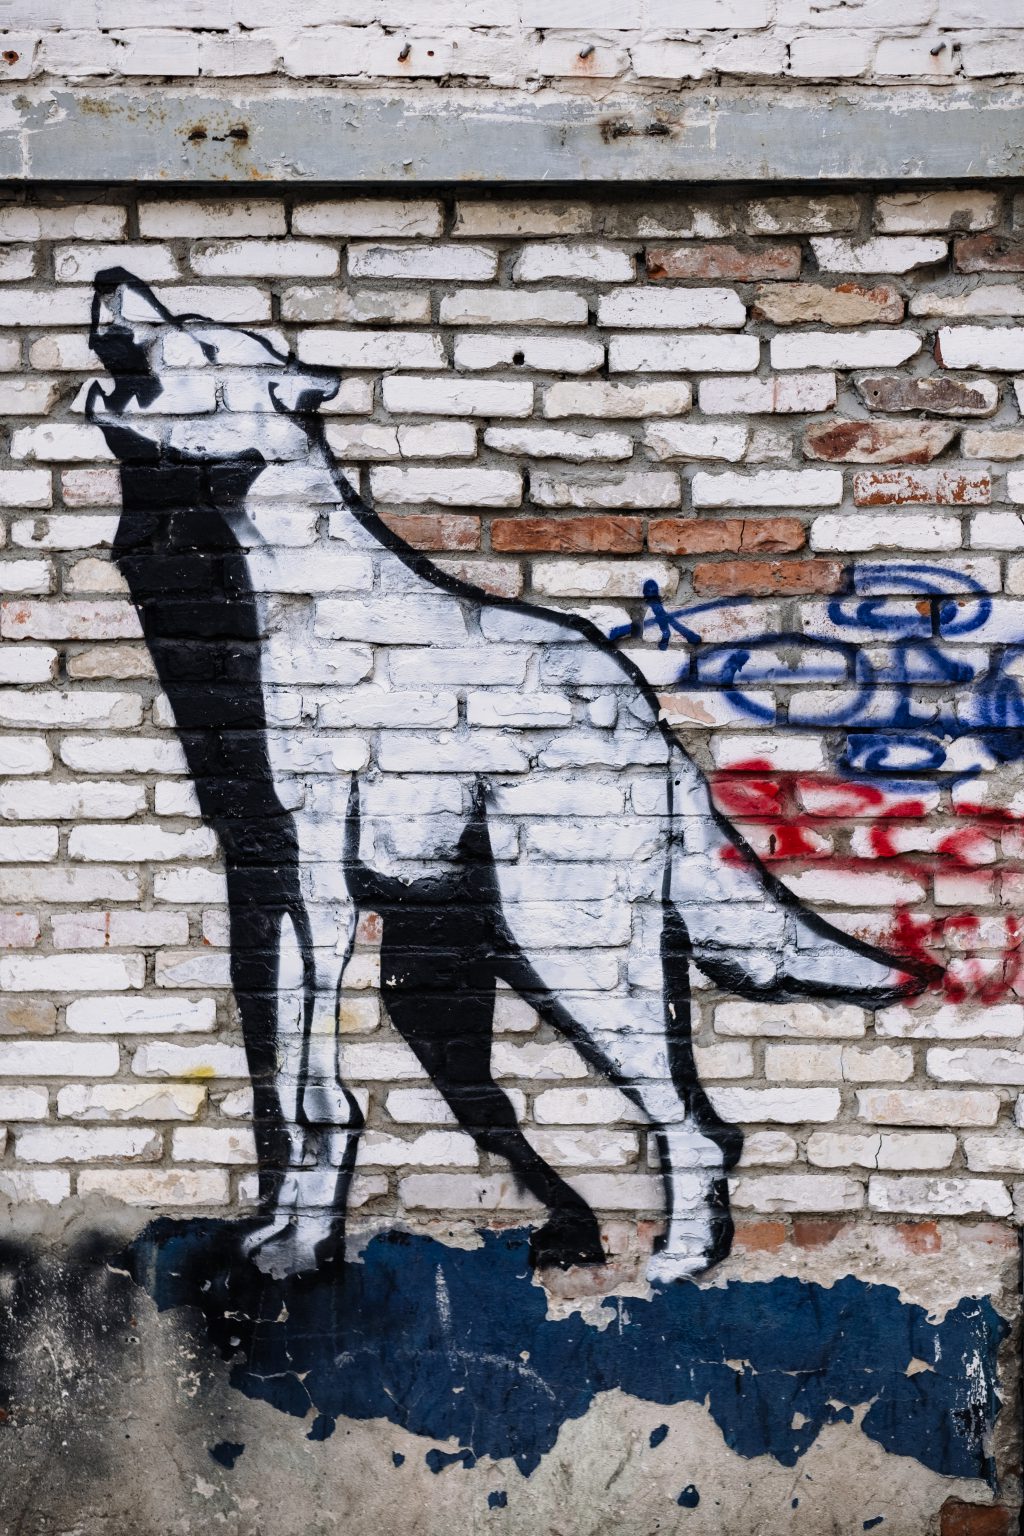 Graffiti of a wolf on a brick wall - free stock photo